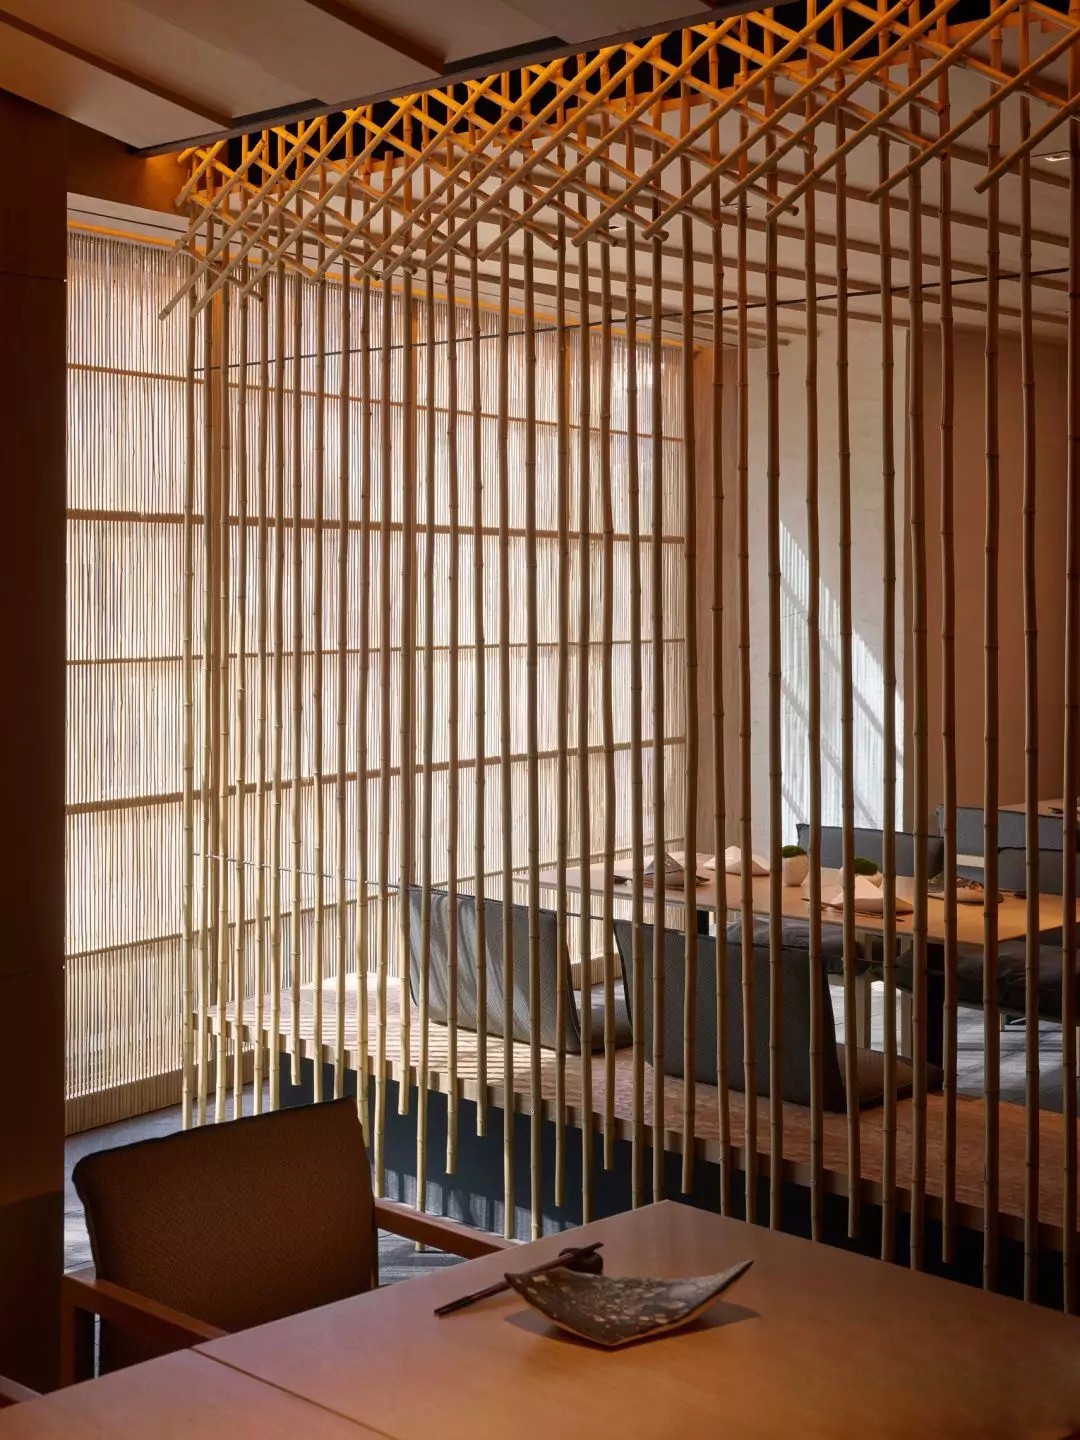 小竹-日式 - 日式风格三室两厅装修效果图 - 郭冬梅设计效果图 - 躺平设计家